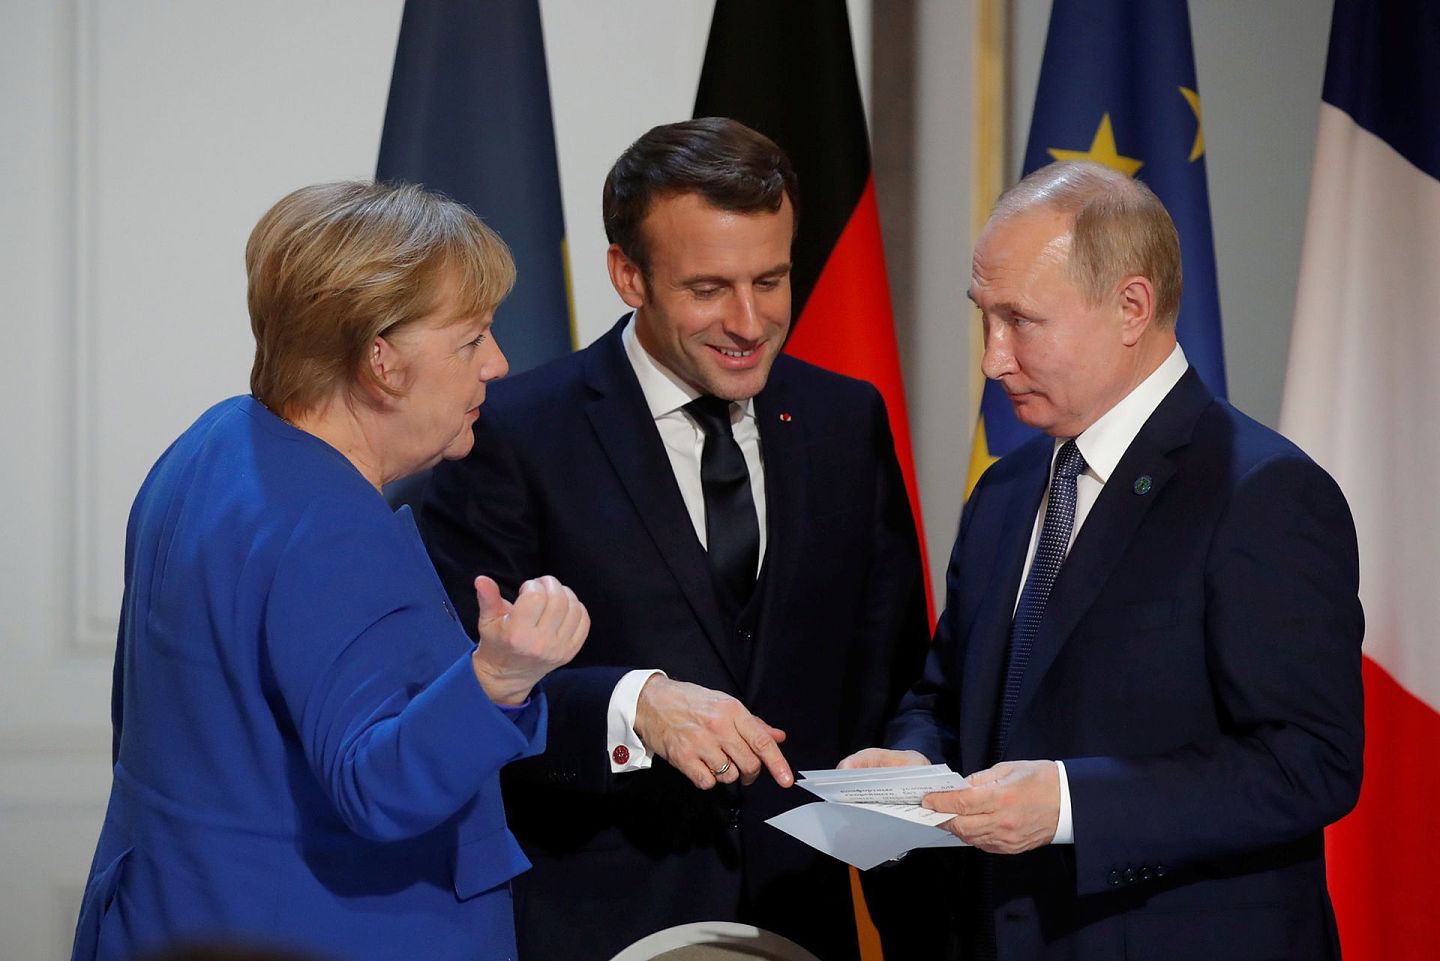 马克龙与默克尔对普京抱有警惕心理，但又不得不处理与俄罗斯的关系。图为2019年12月9日，默克尔、马克龙和俄罗斯总统普京在巴黎爱丽舍宫出席与乌克兰总统泽伦斯基举行的联合新闻发布会。（AP)